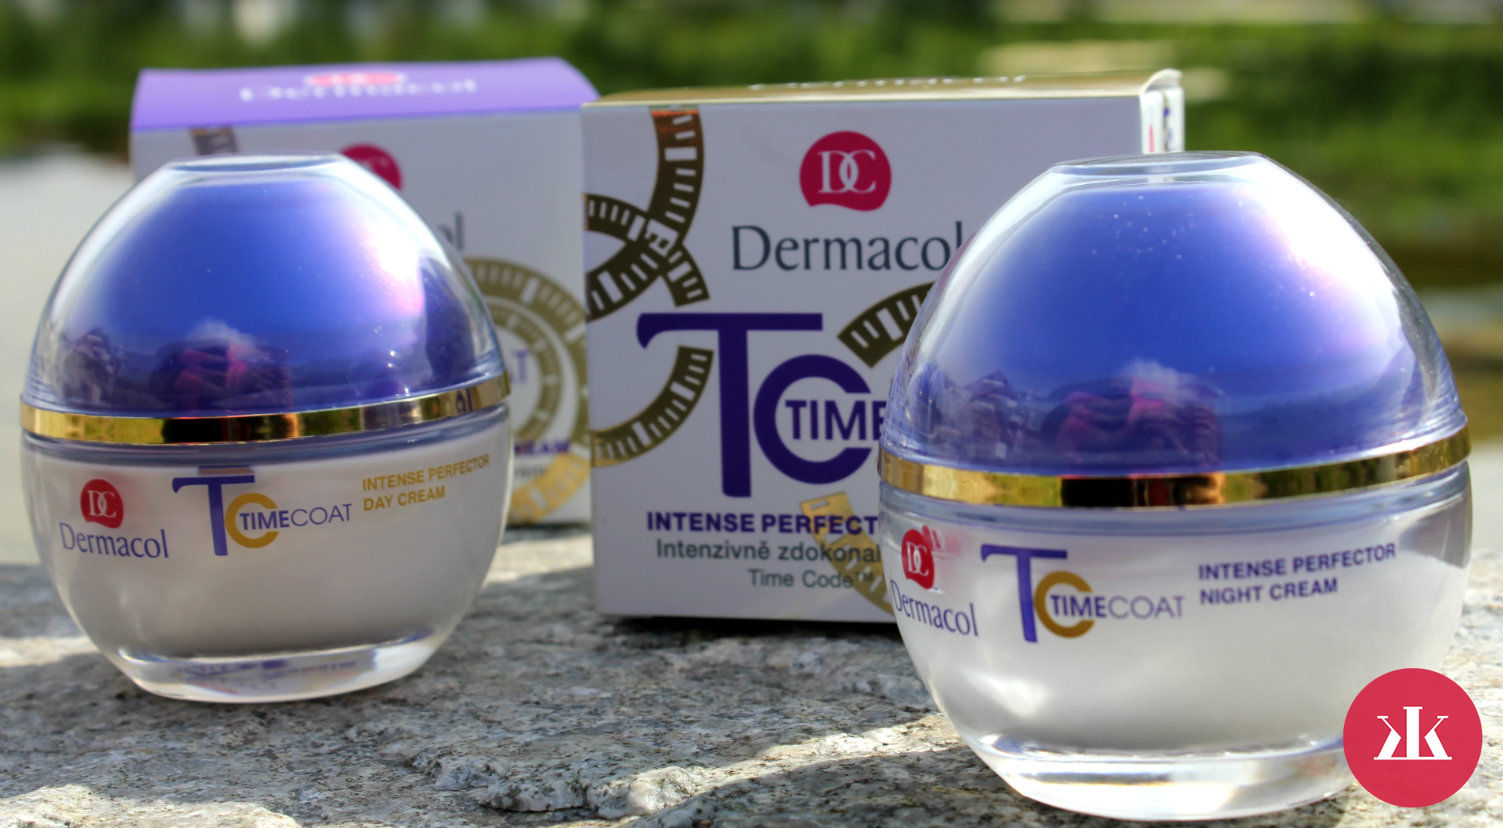 TEST: Dermacol - Intenzívny zdokonaľujúci denný a nočný krém